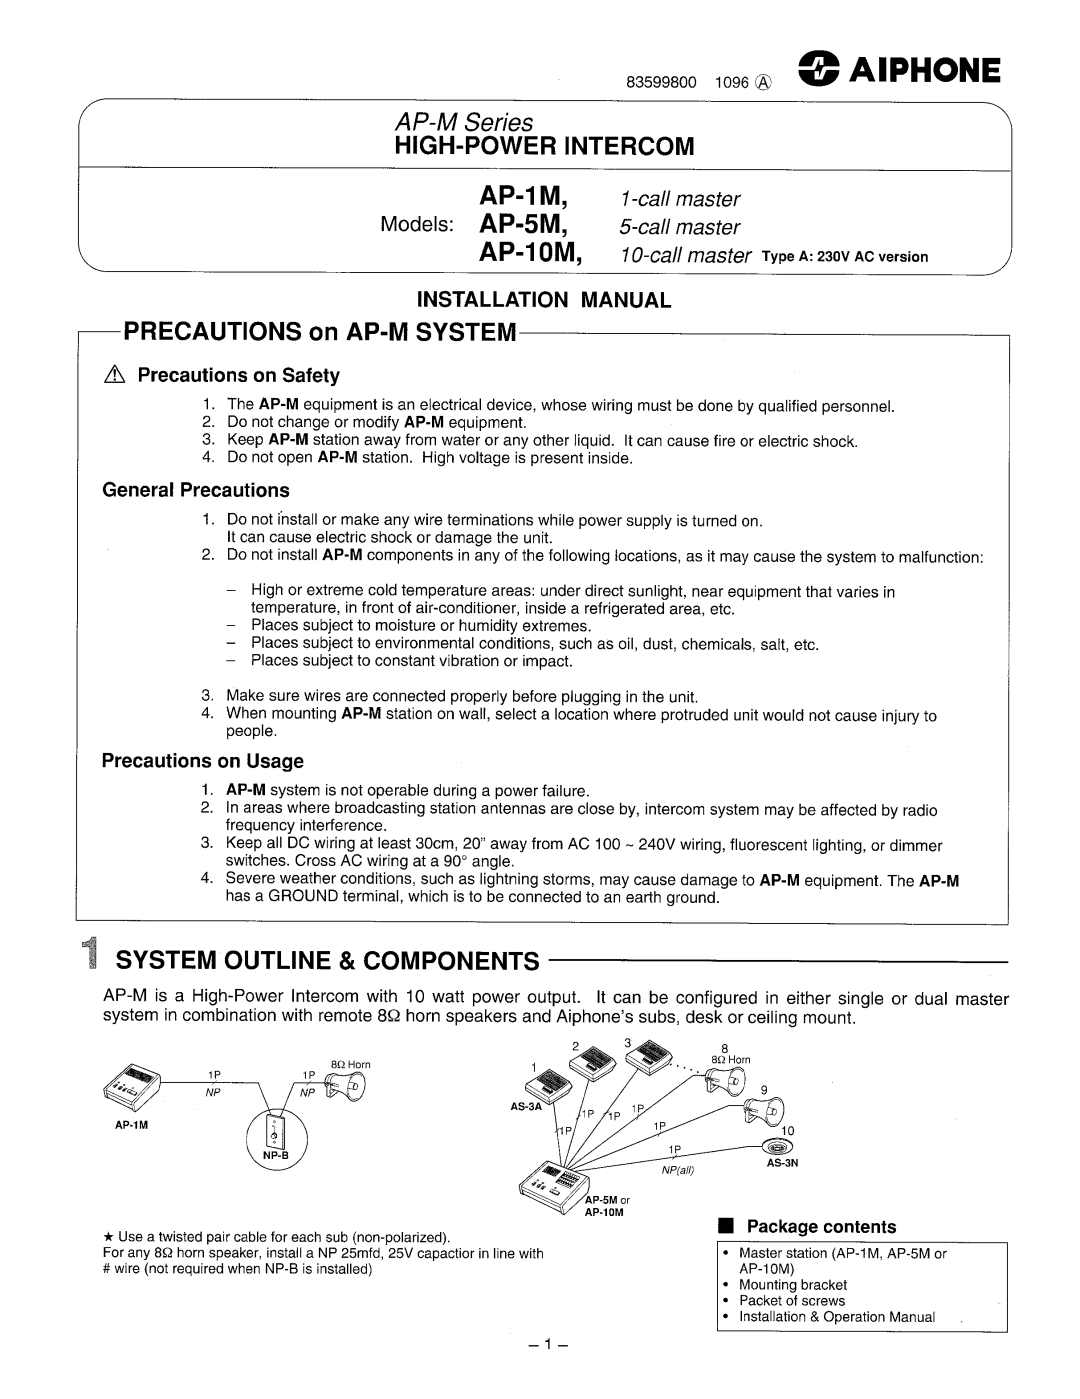 Aiphone AP-10M, Ap-5m, AP-1M manual 